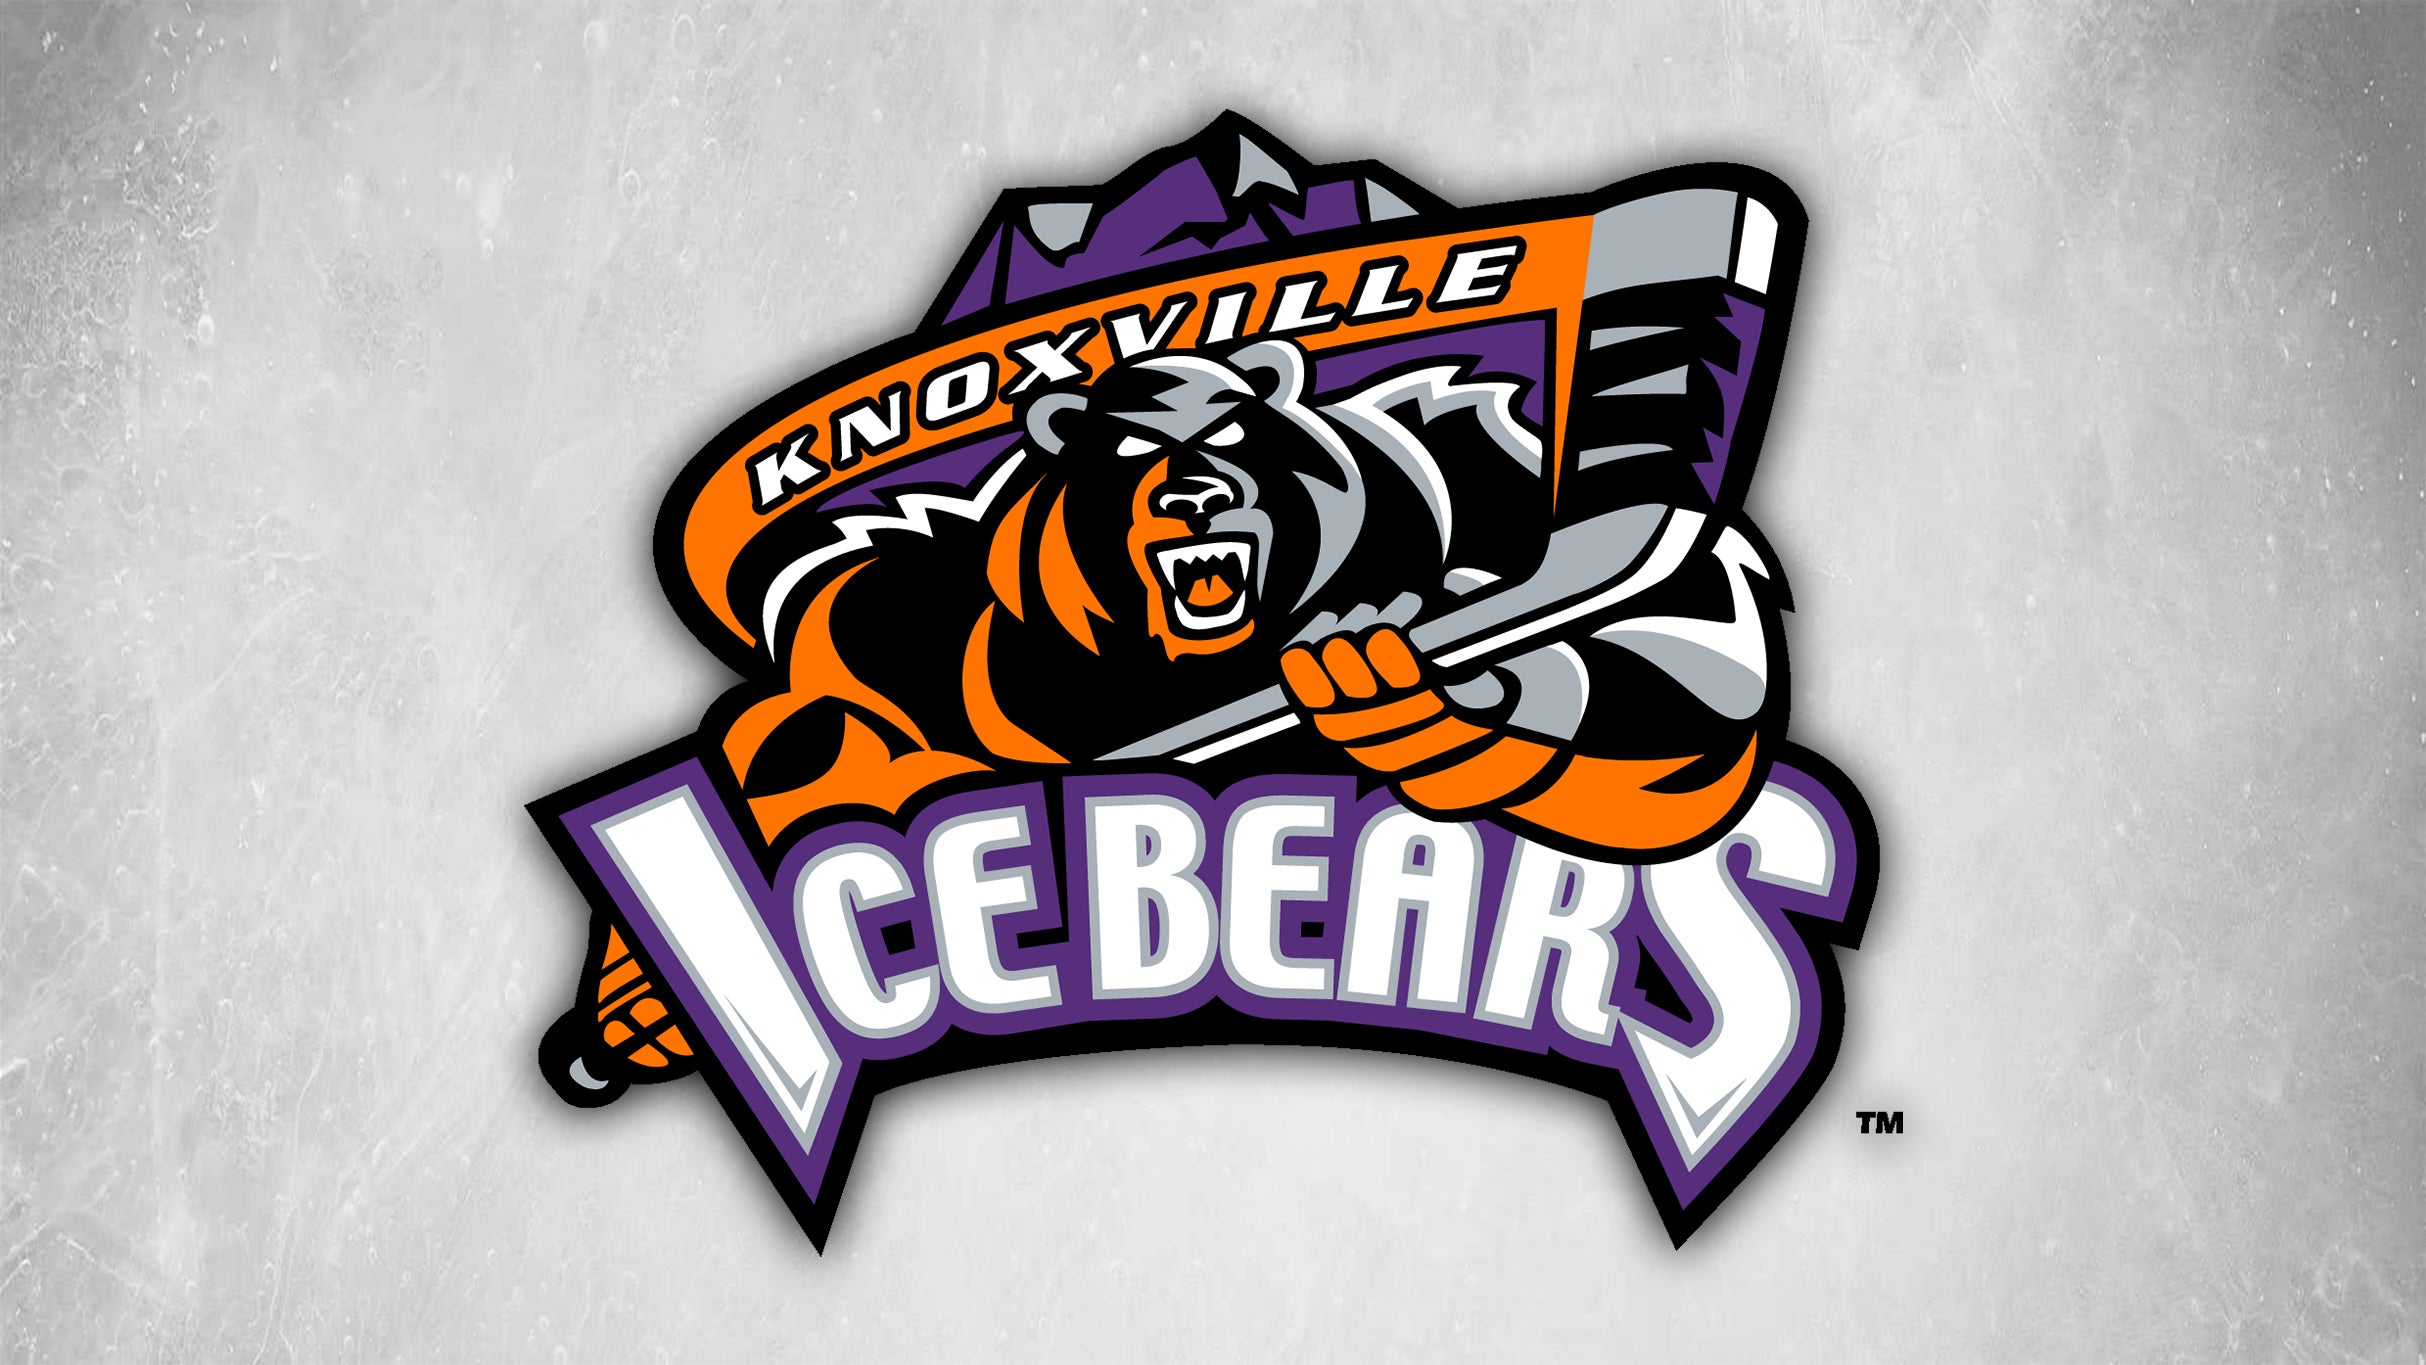 Knoxville Ice Bears vs. Huntsville Havoc